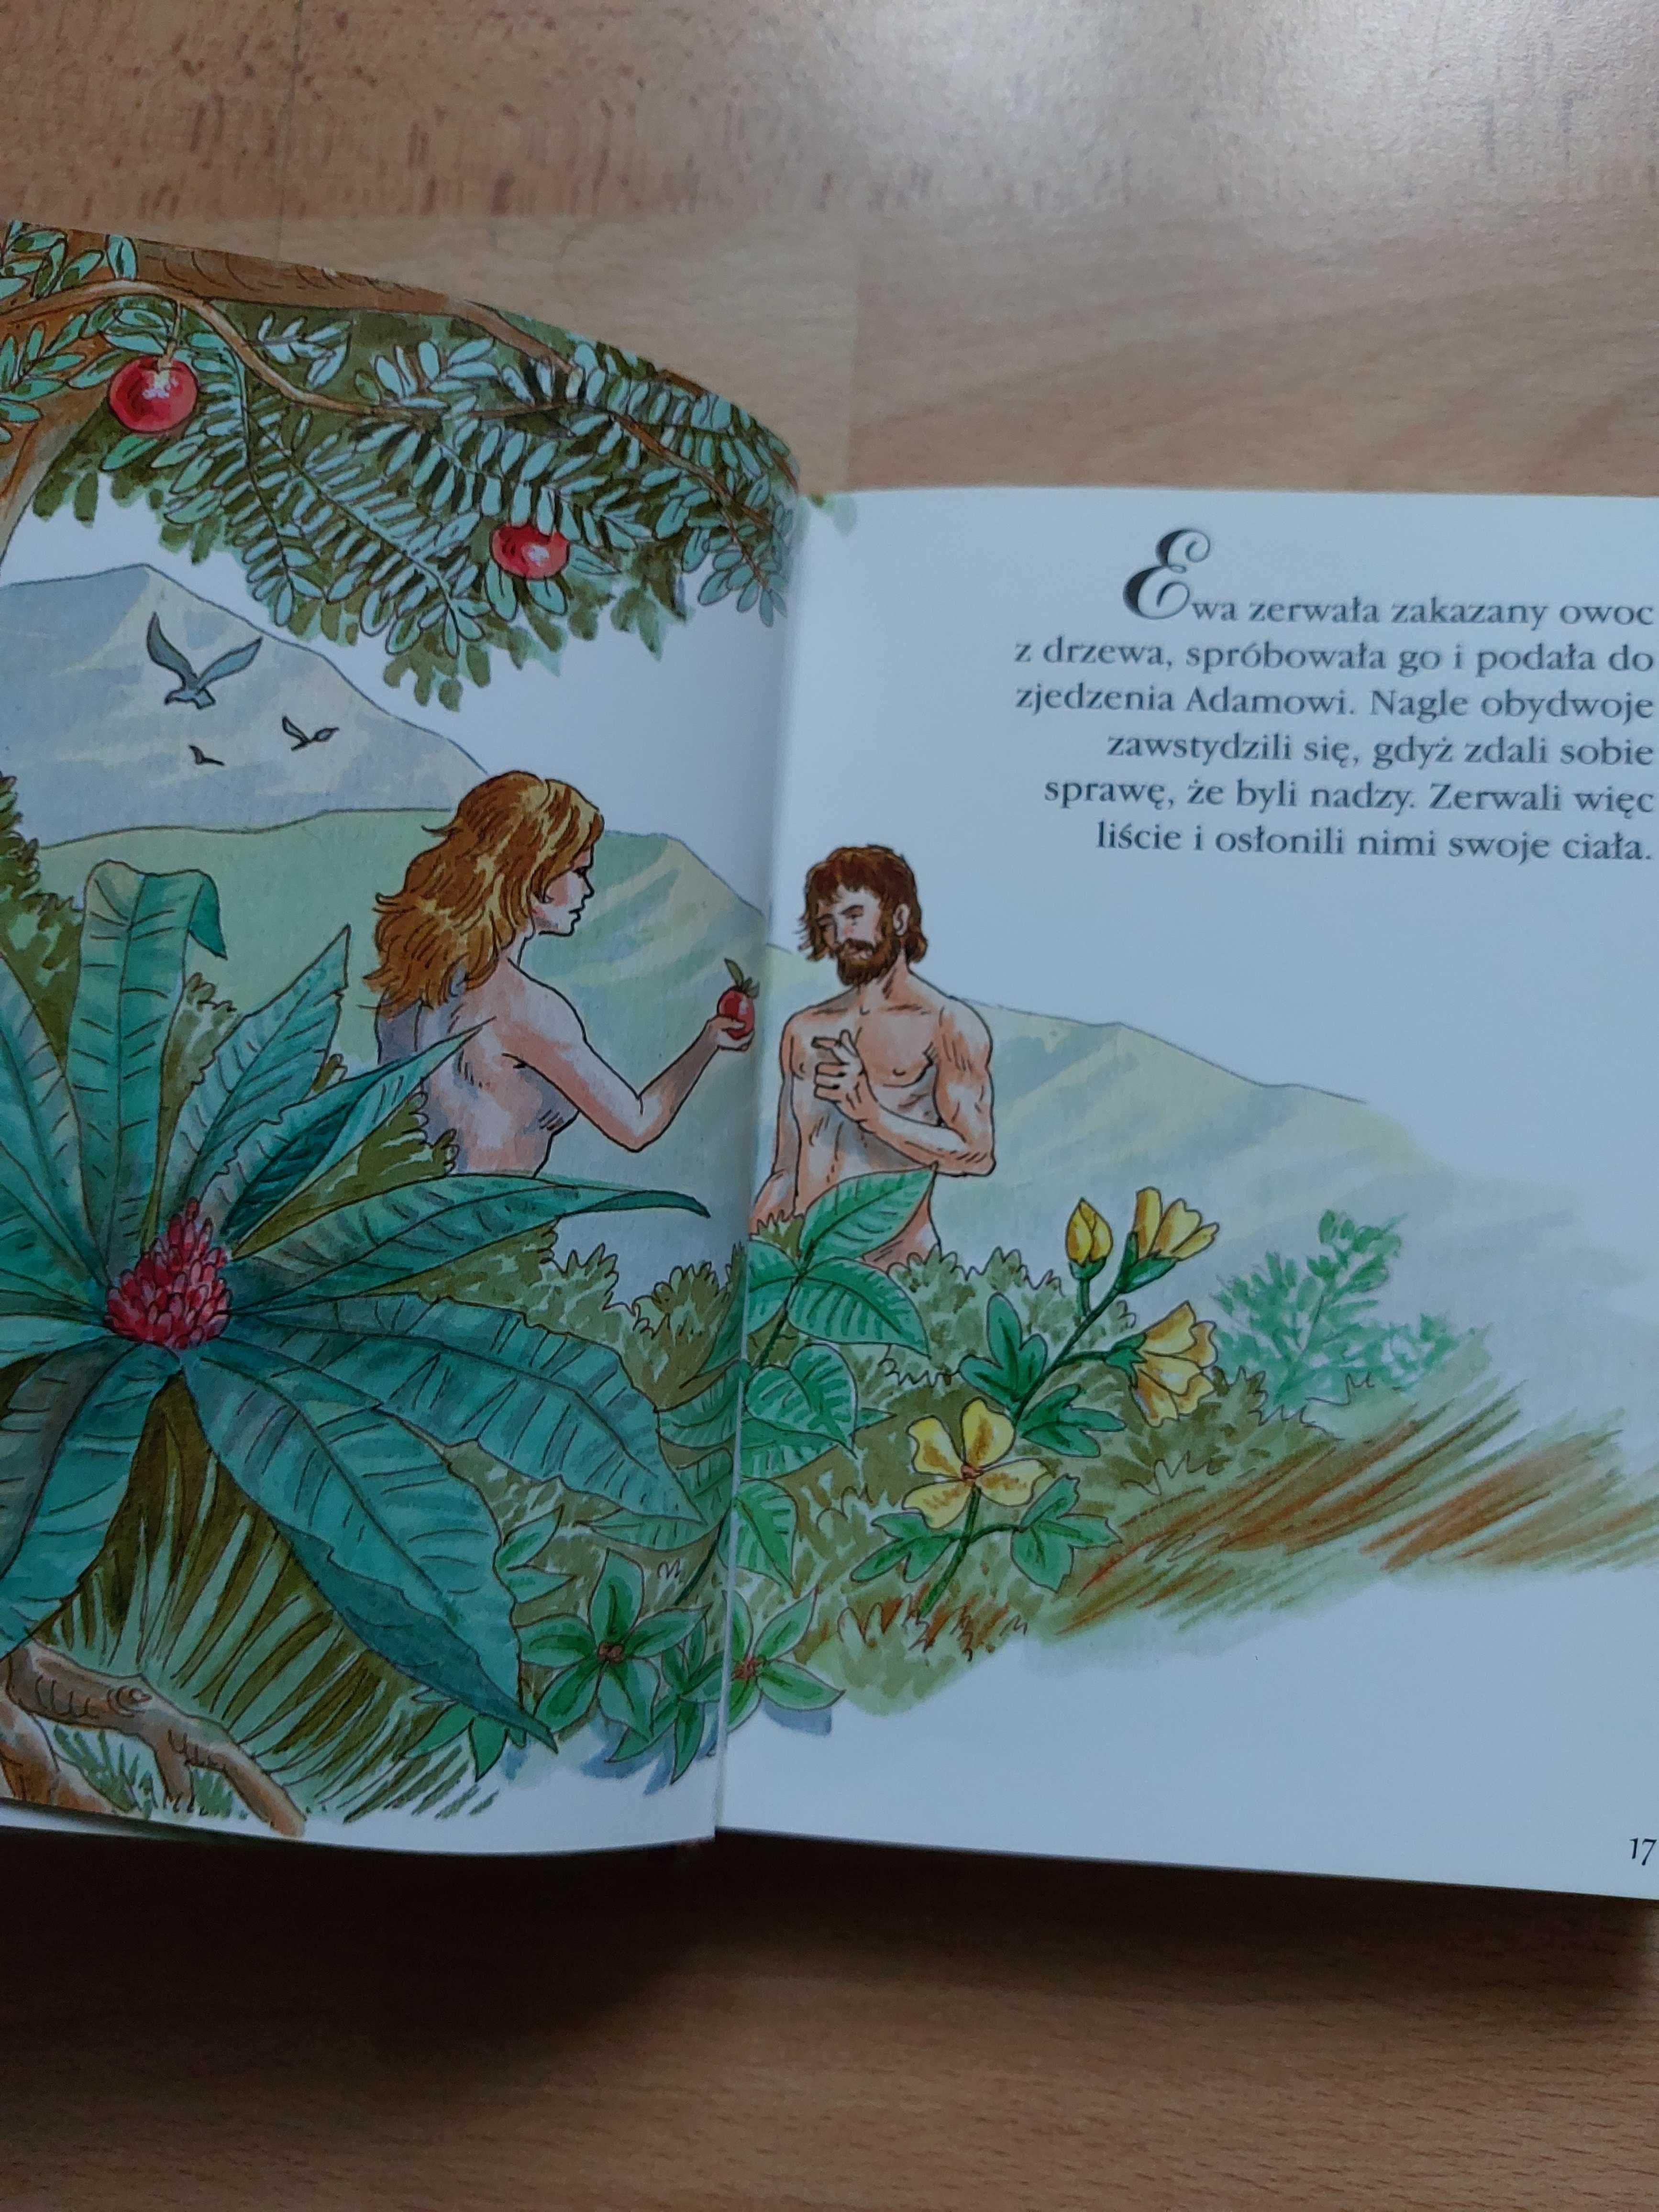 Historie biblijne dla dzieci oprawa twarda prezent na pierwszą Komunię